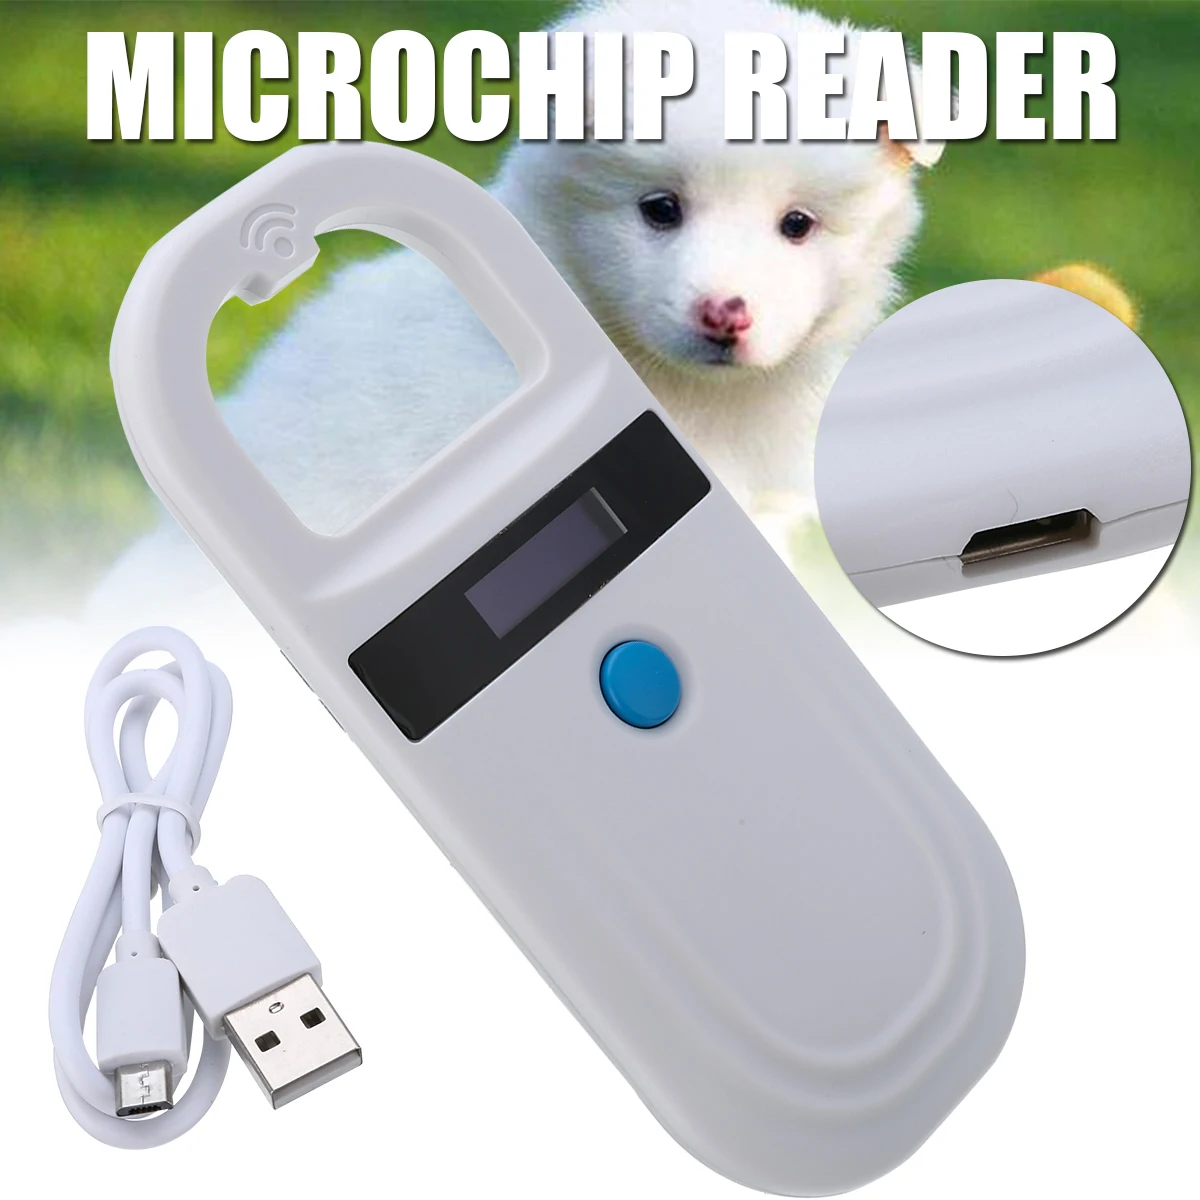 

Portable OLED Display RFID ISO FDX-B 134.2kHz/125kHz Animal Pet Microchip Reader Scanner for Dog Cat